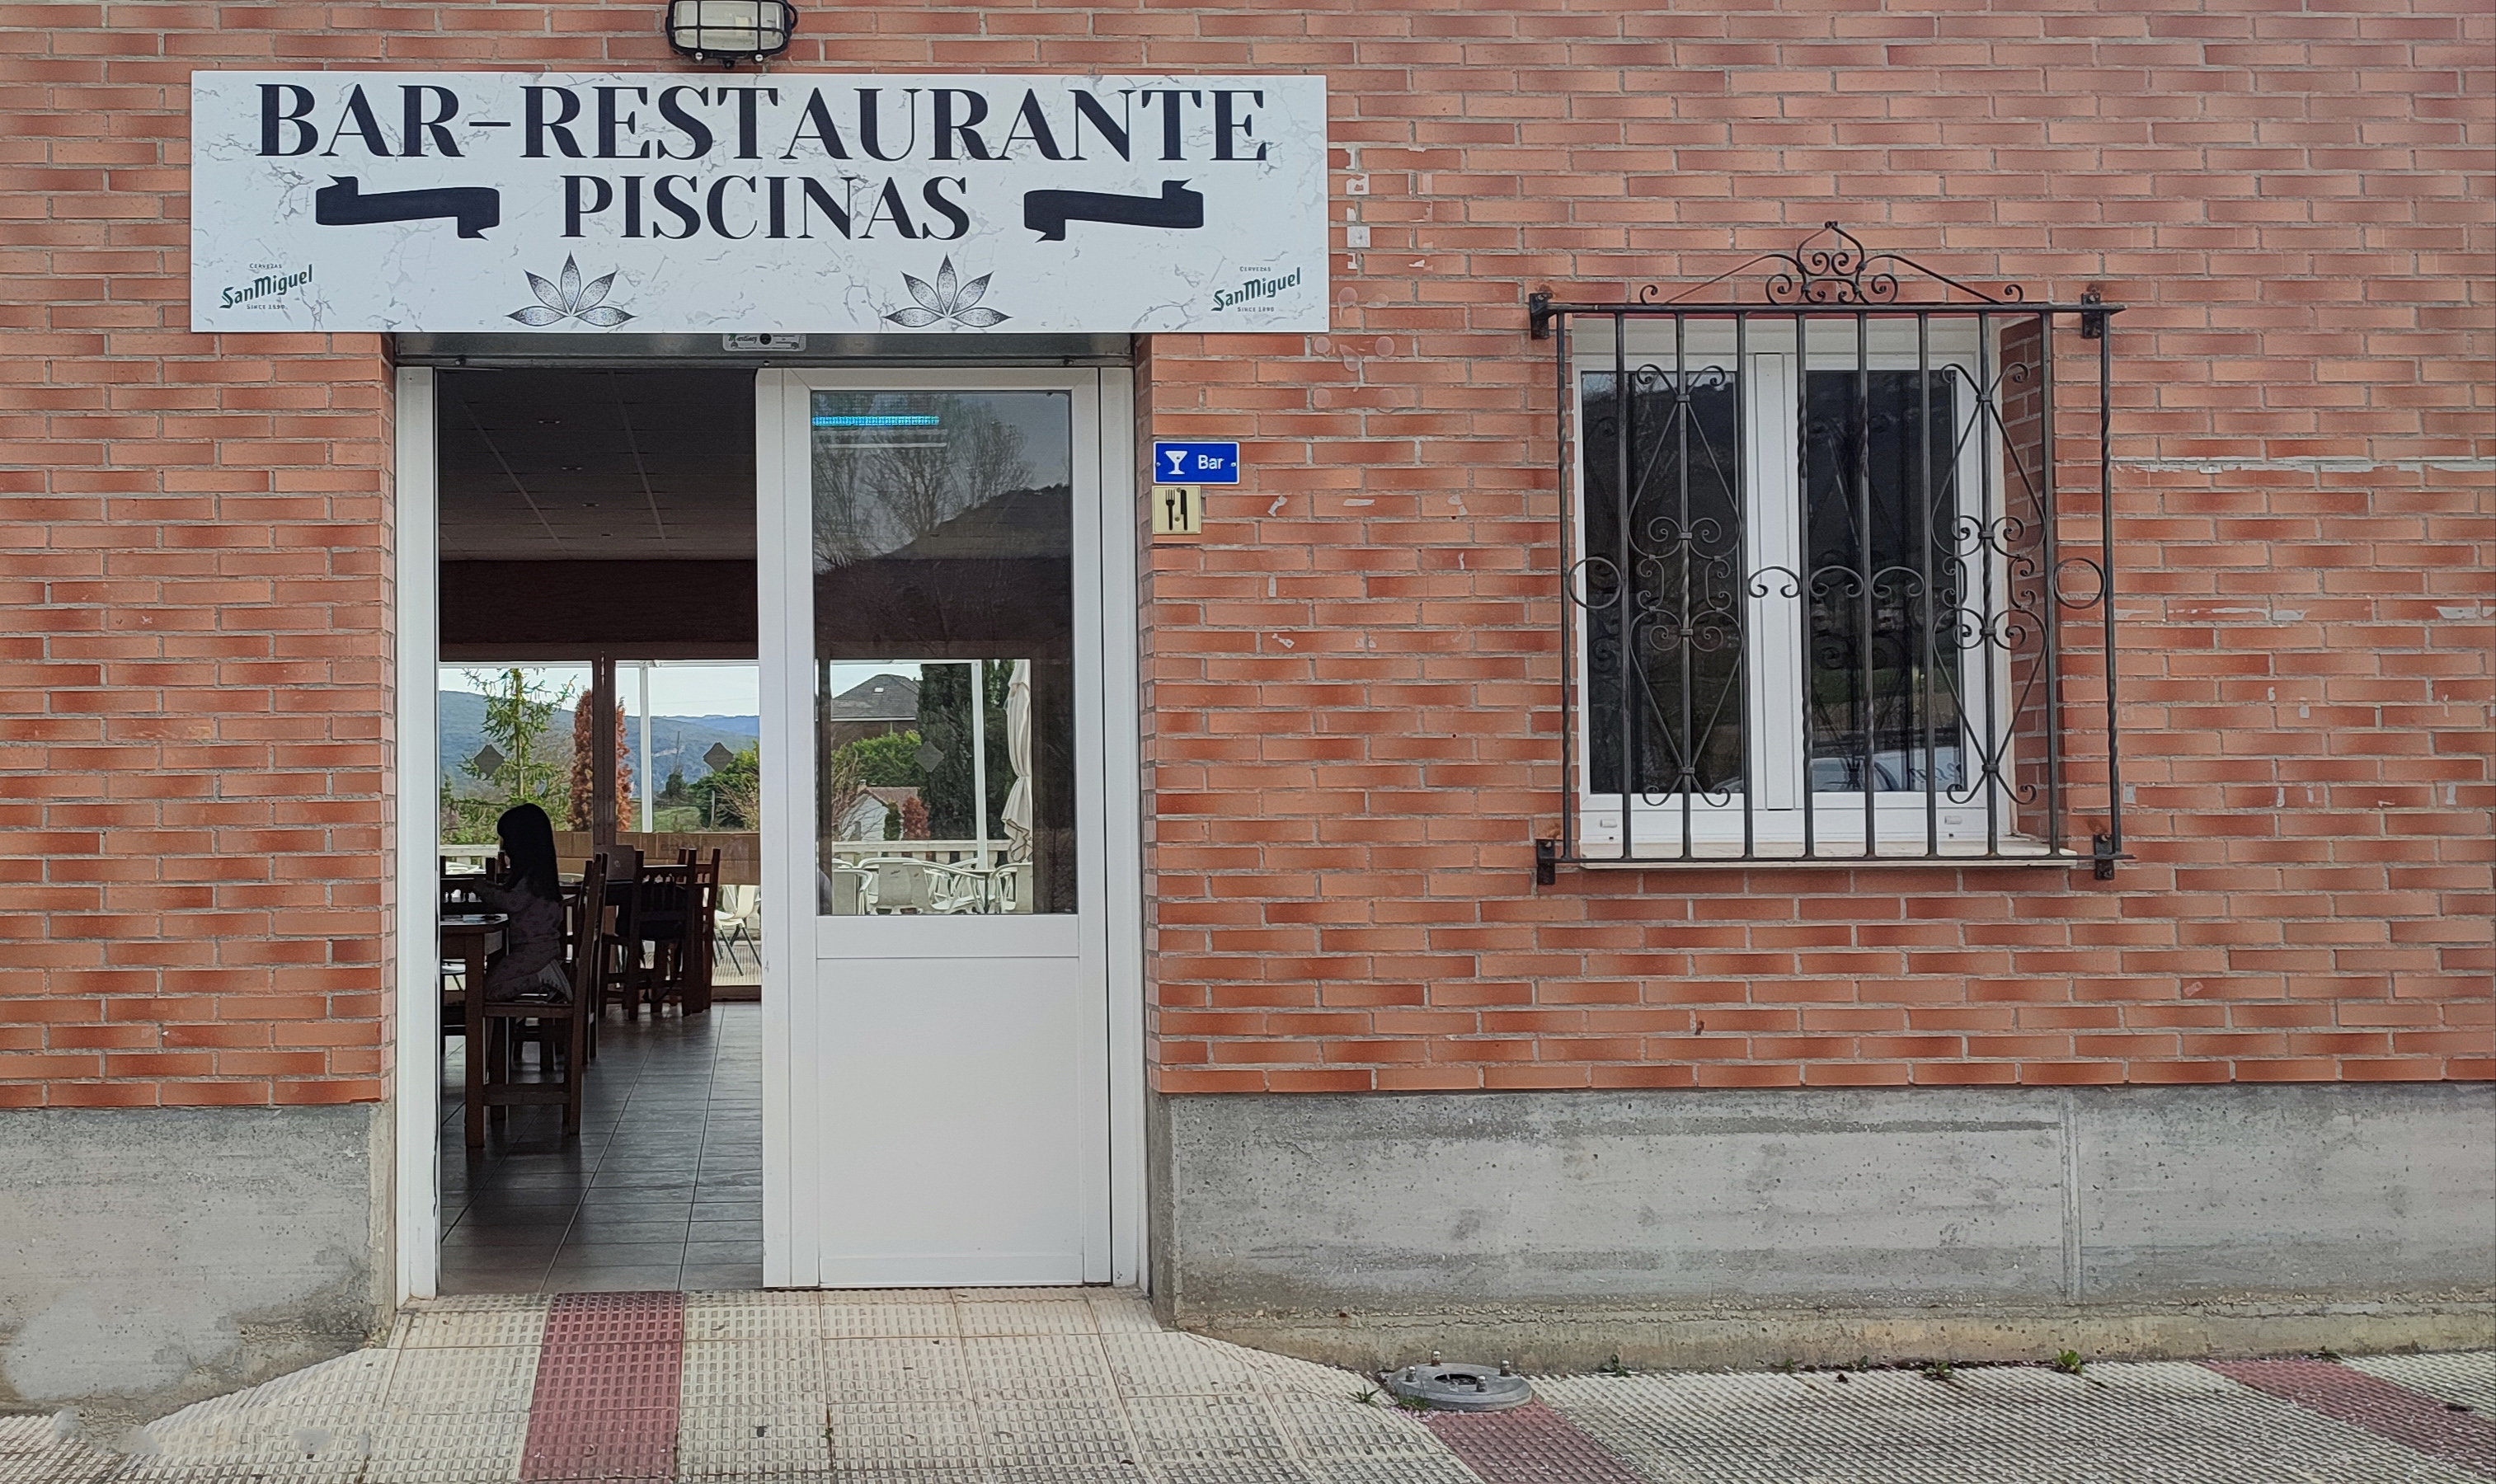 Bar-Restaurante Piscinas Valle de Tobalina